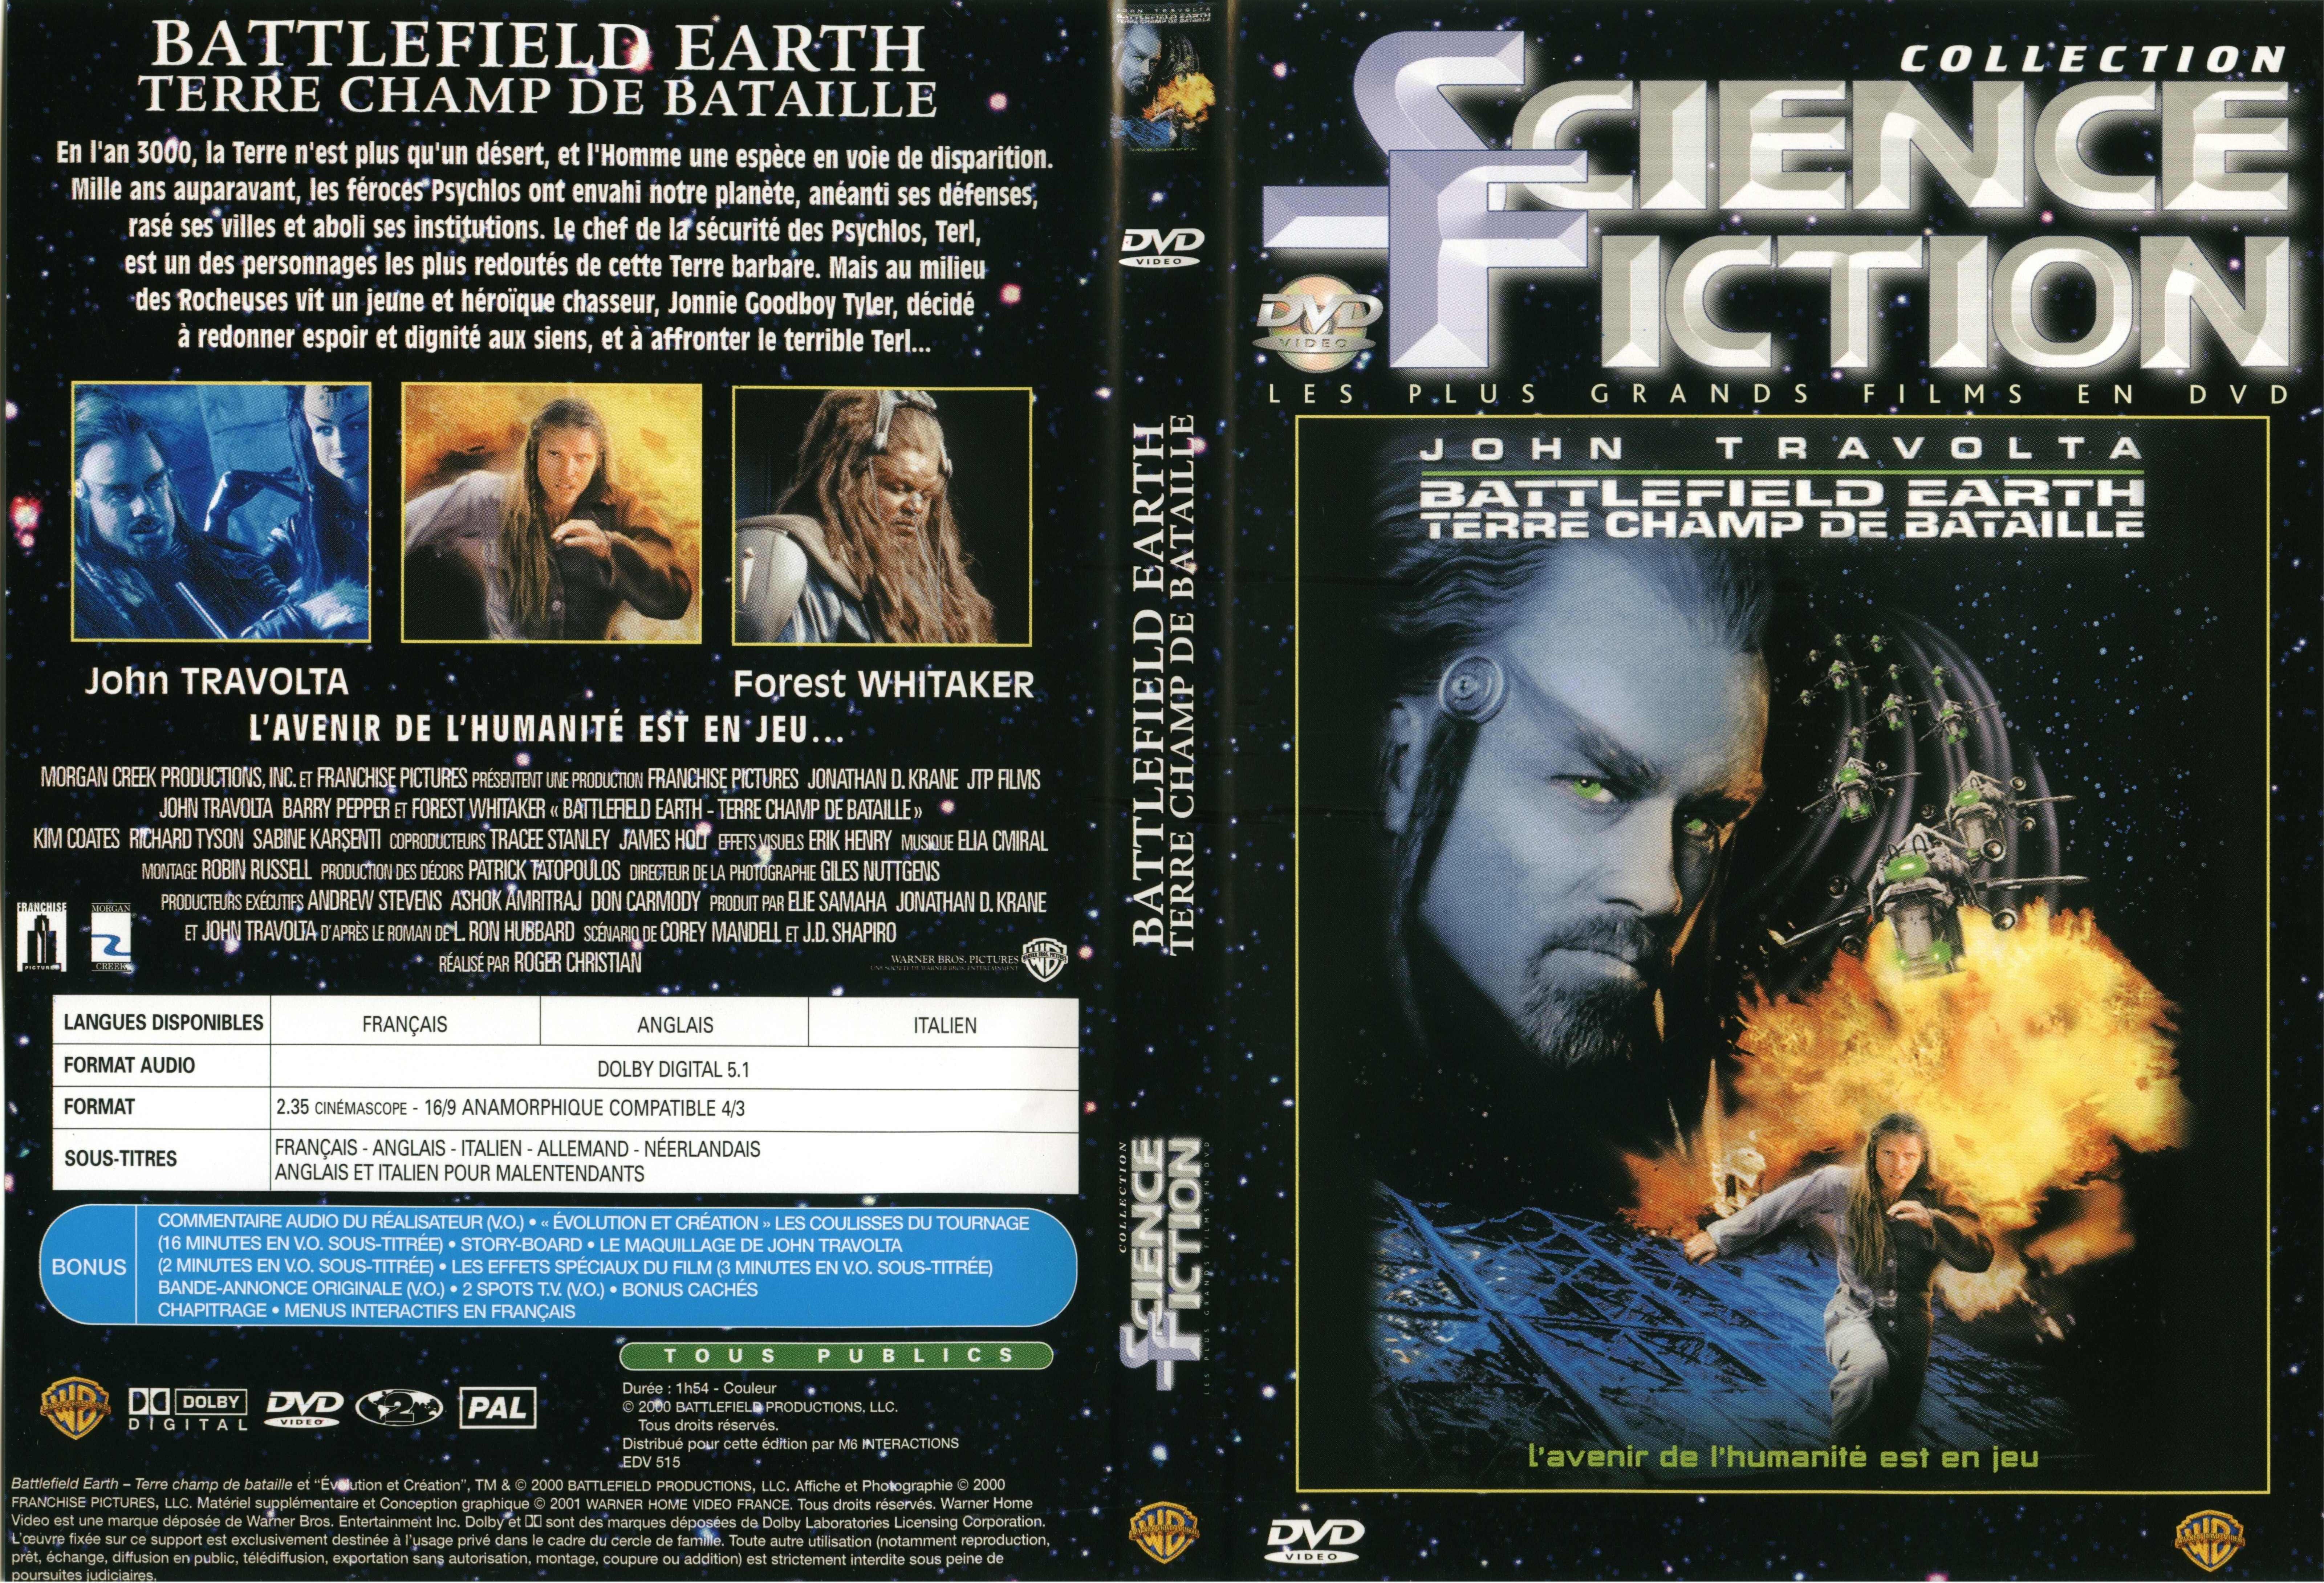 Jaquette DVD Battlefield earth